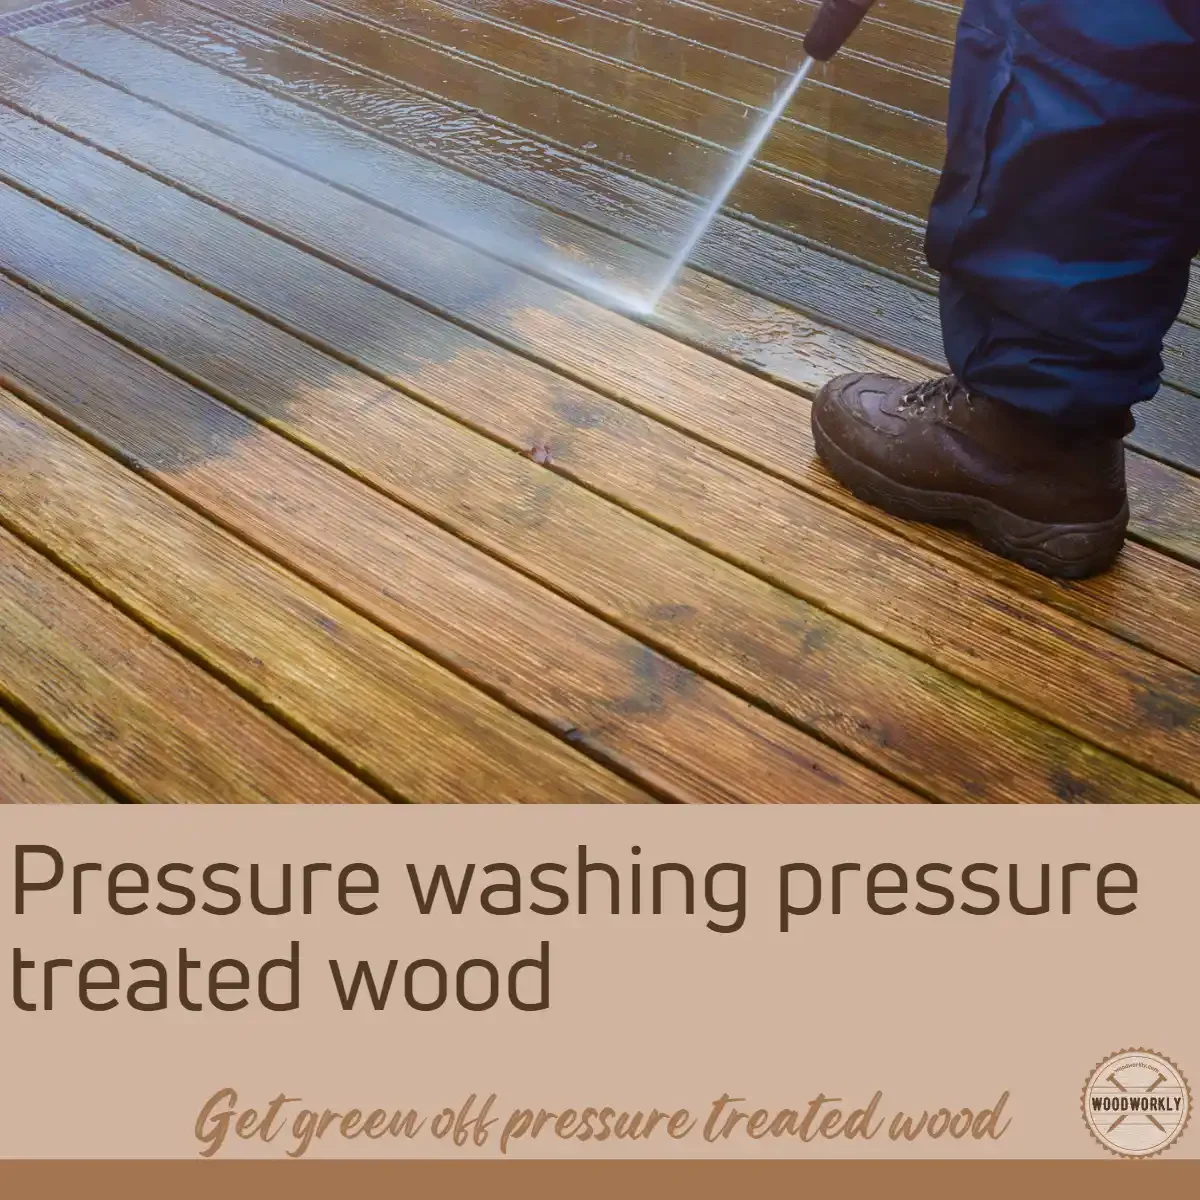 Pressure washing pressure treated wood